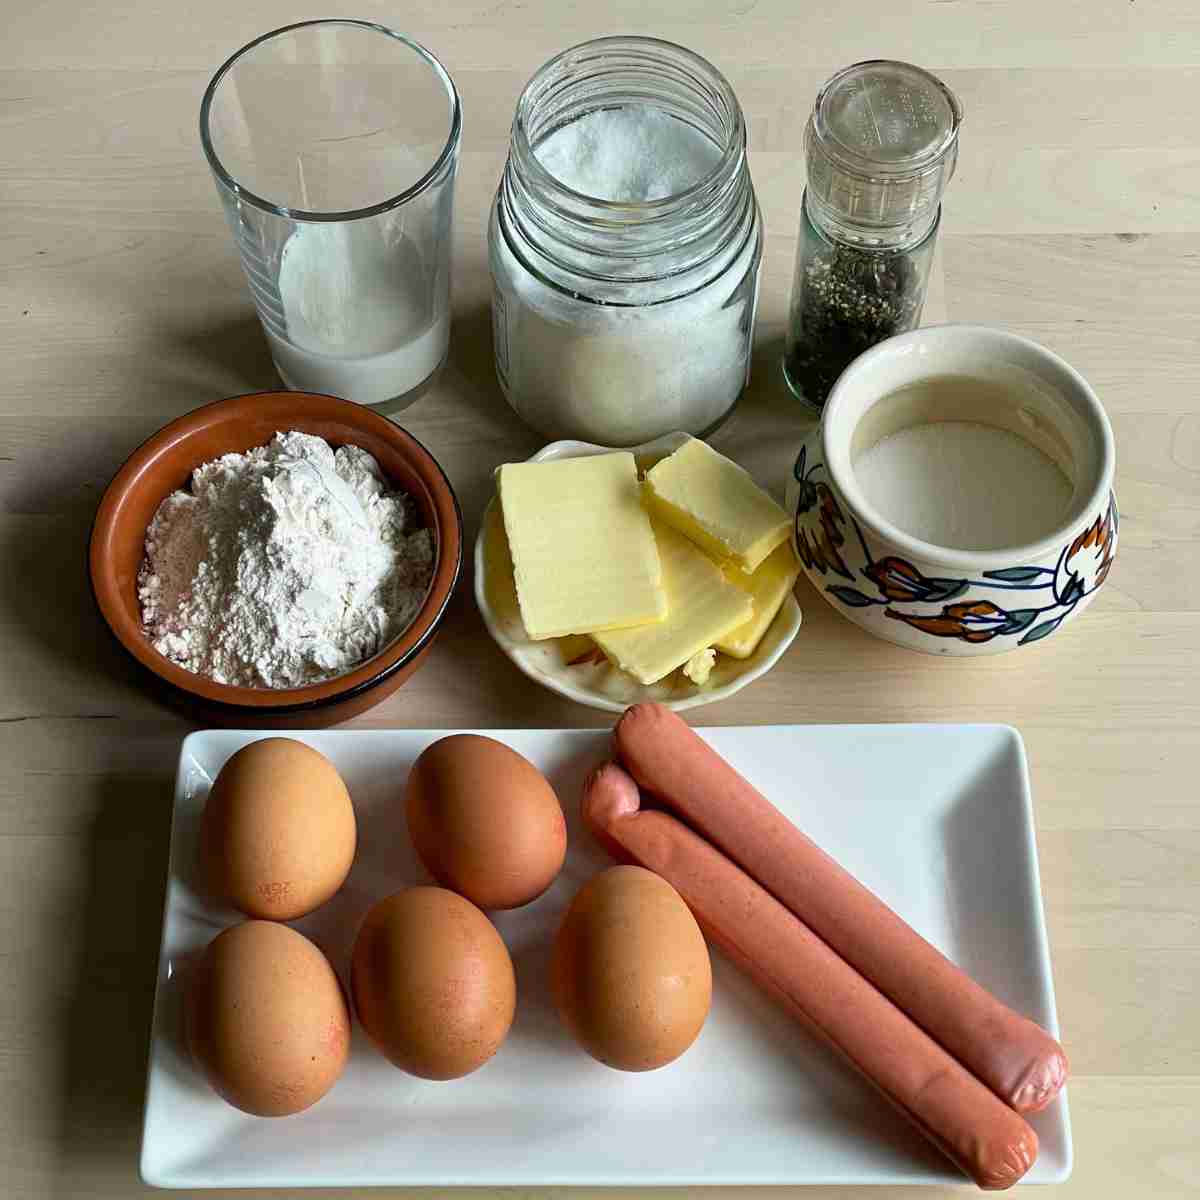 Korean egg bread Ingredients